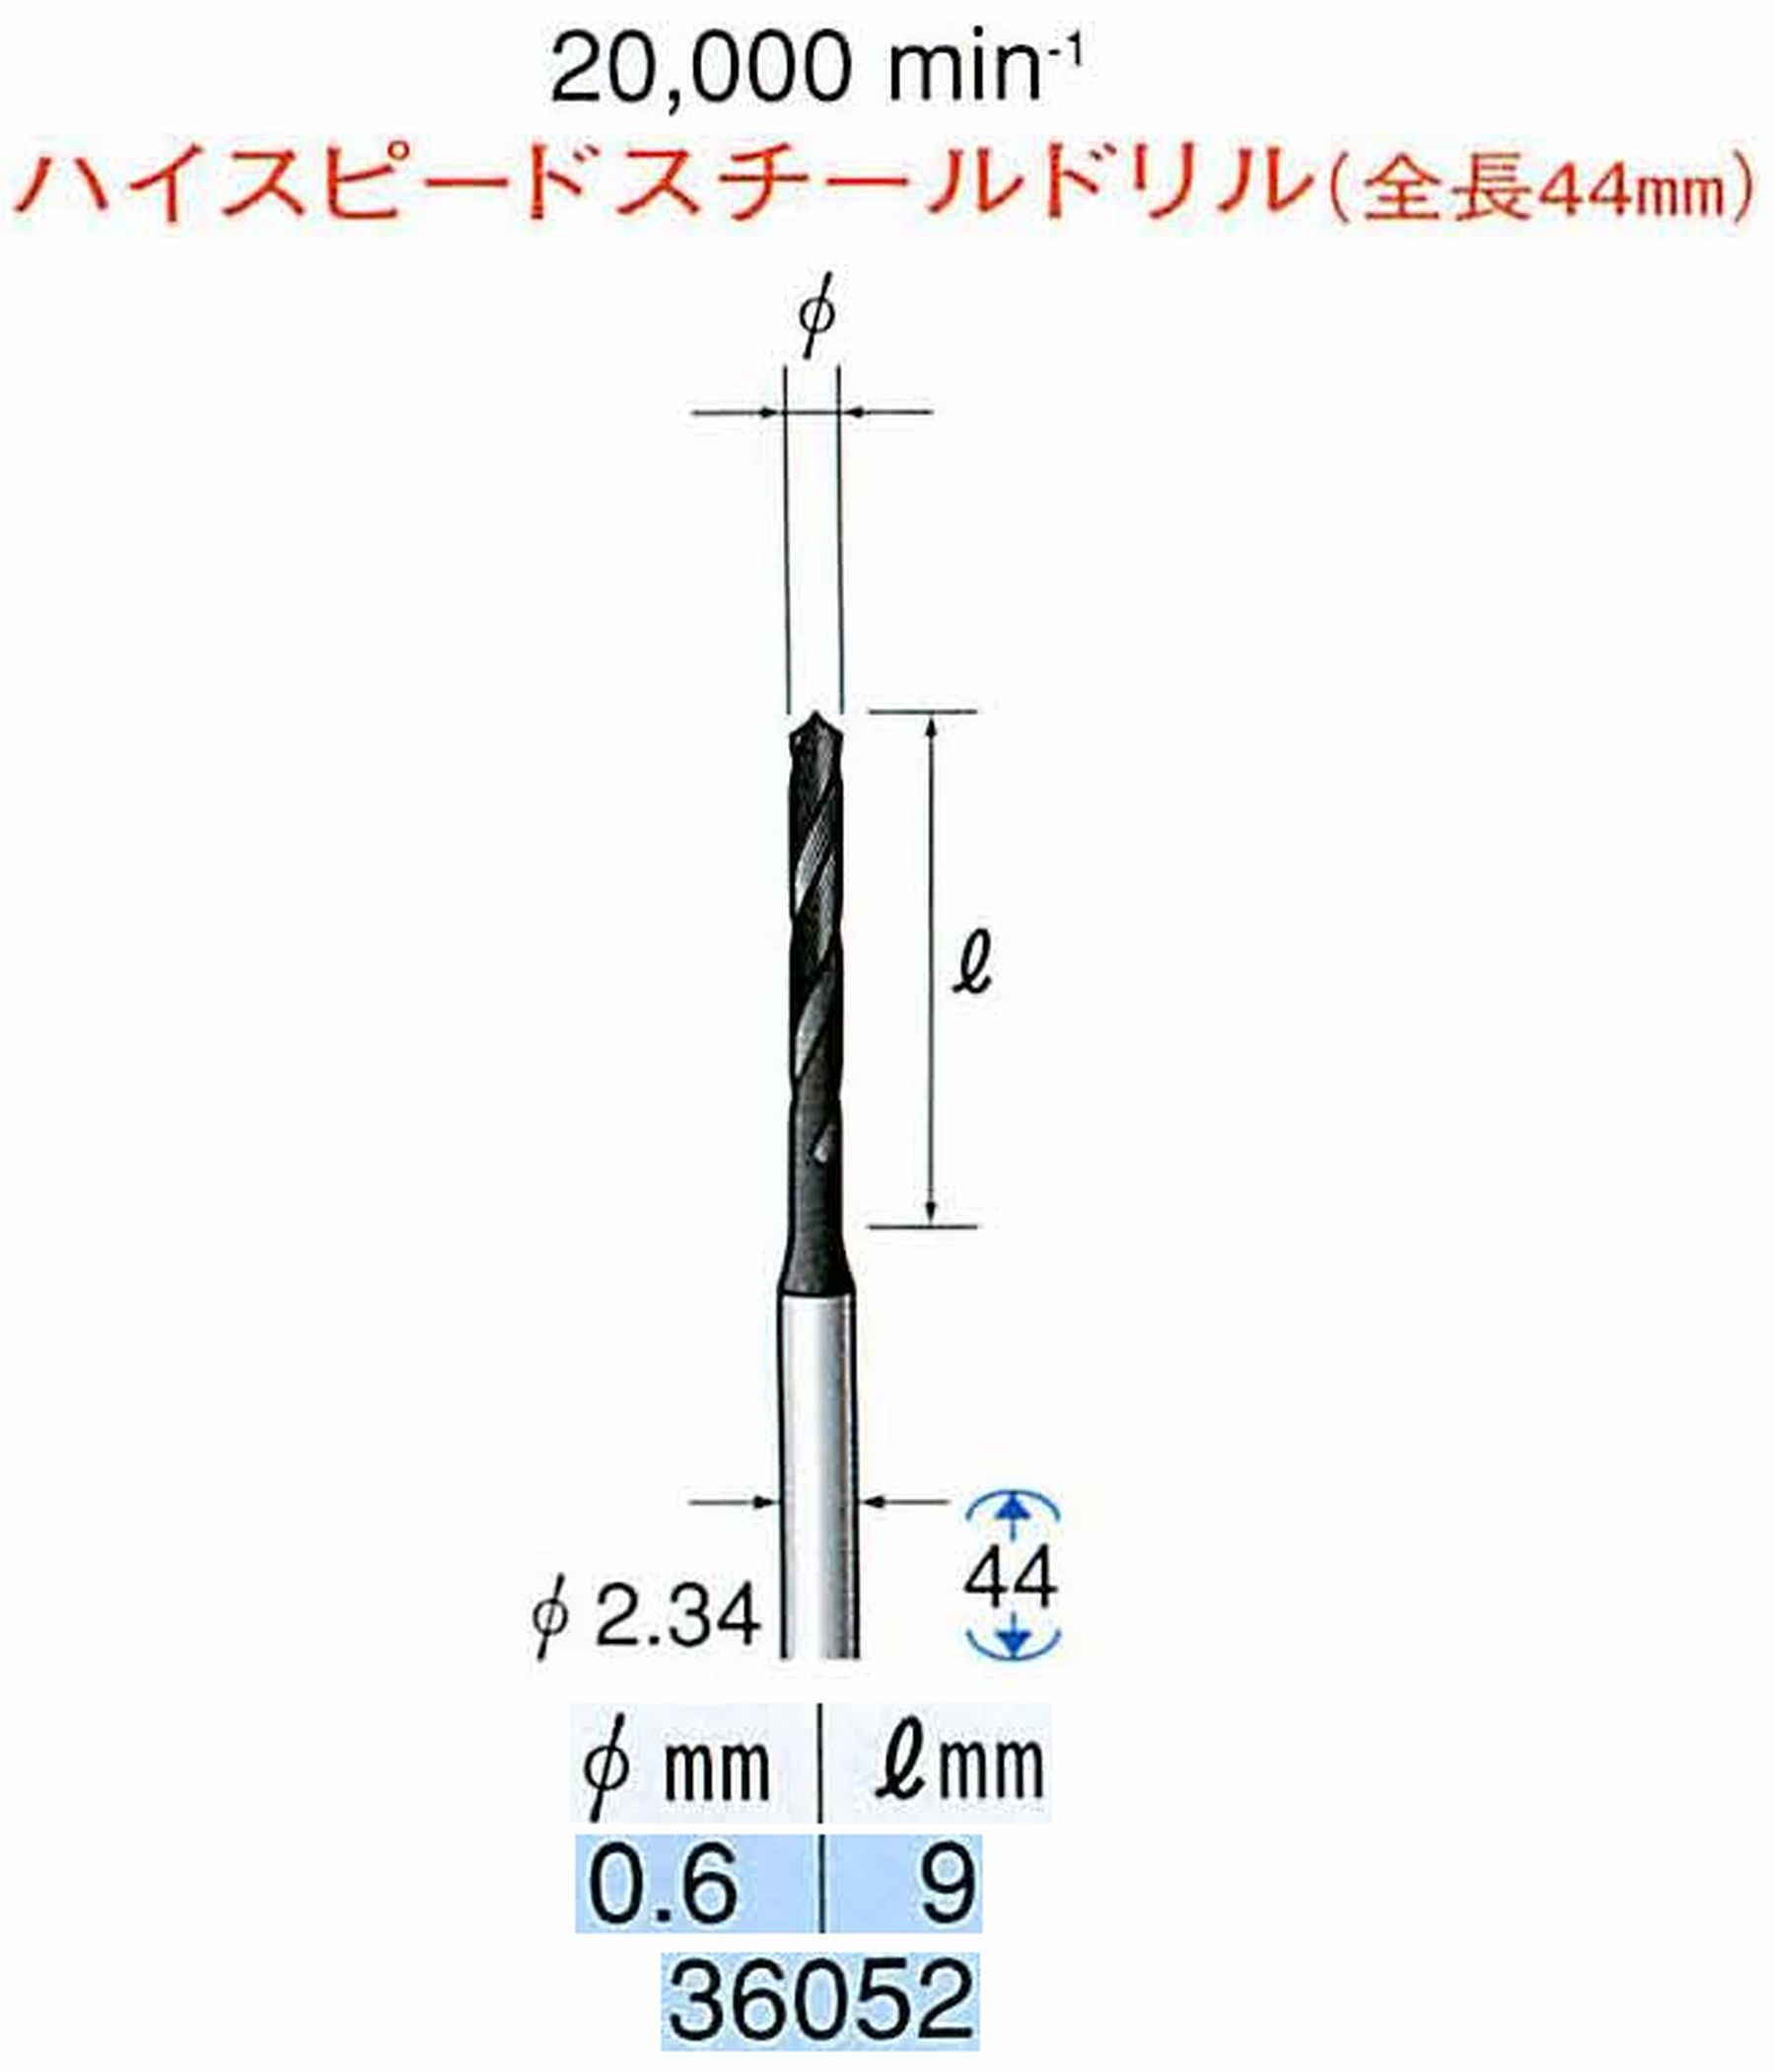 ナカニシ/NAKANISHI ツイストドリル ハイスピードスチール(H.S.S)ドリル(全長44mm) 軸径(シャンク) φ2.34mm 36052